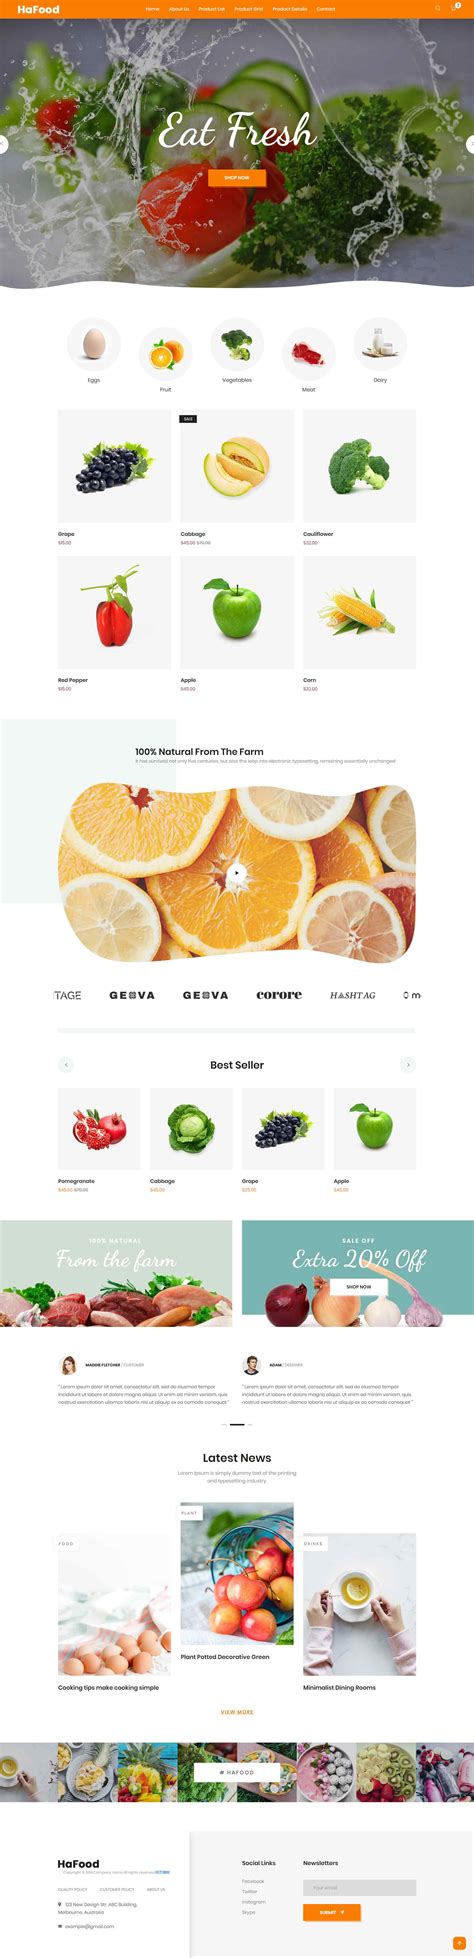 水果外贸网站模板整站源码-MetInfo响应式网页设计制作